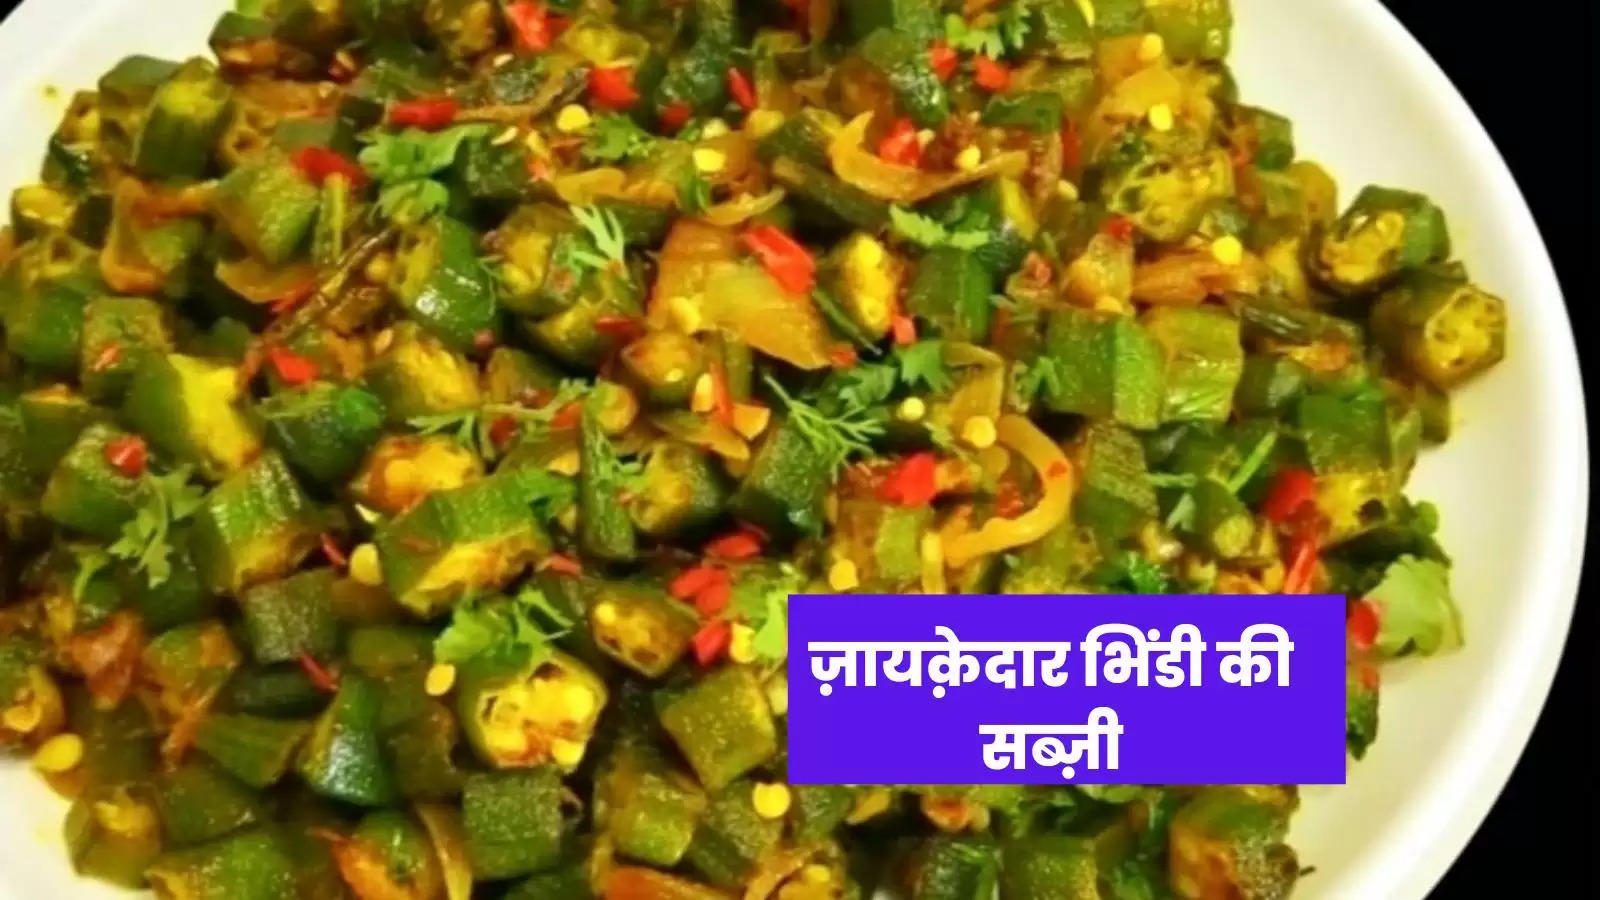 घर पर आसानी से बनाए भिंडी की स्वादिष्ट सब्ज़ी, पढ़े पूरी रेसिपी हिंदी में